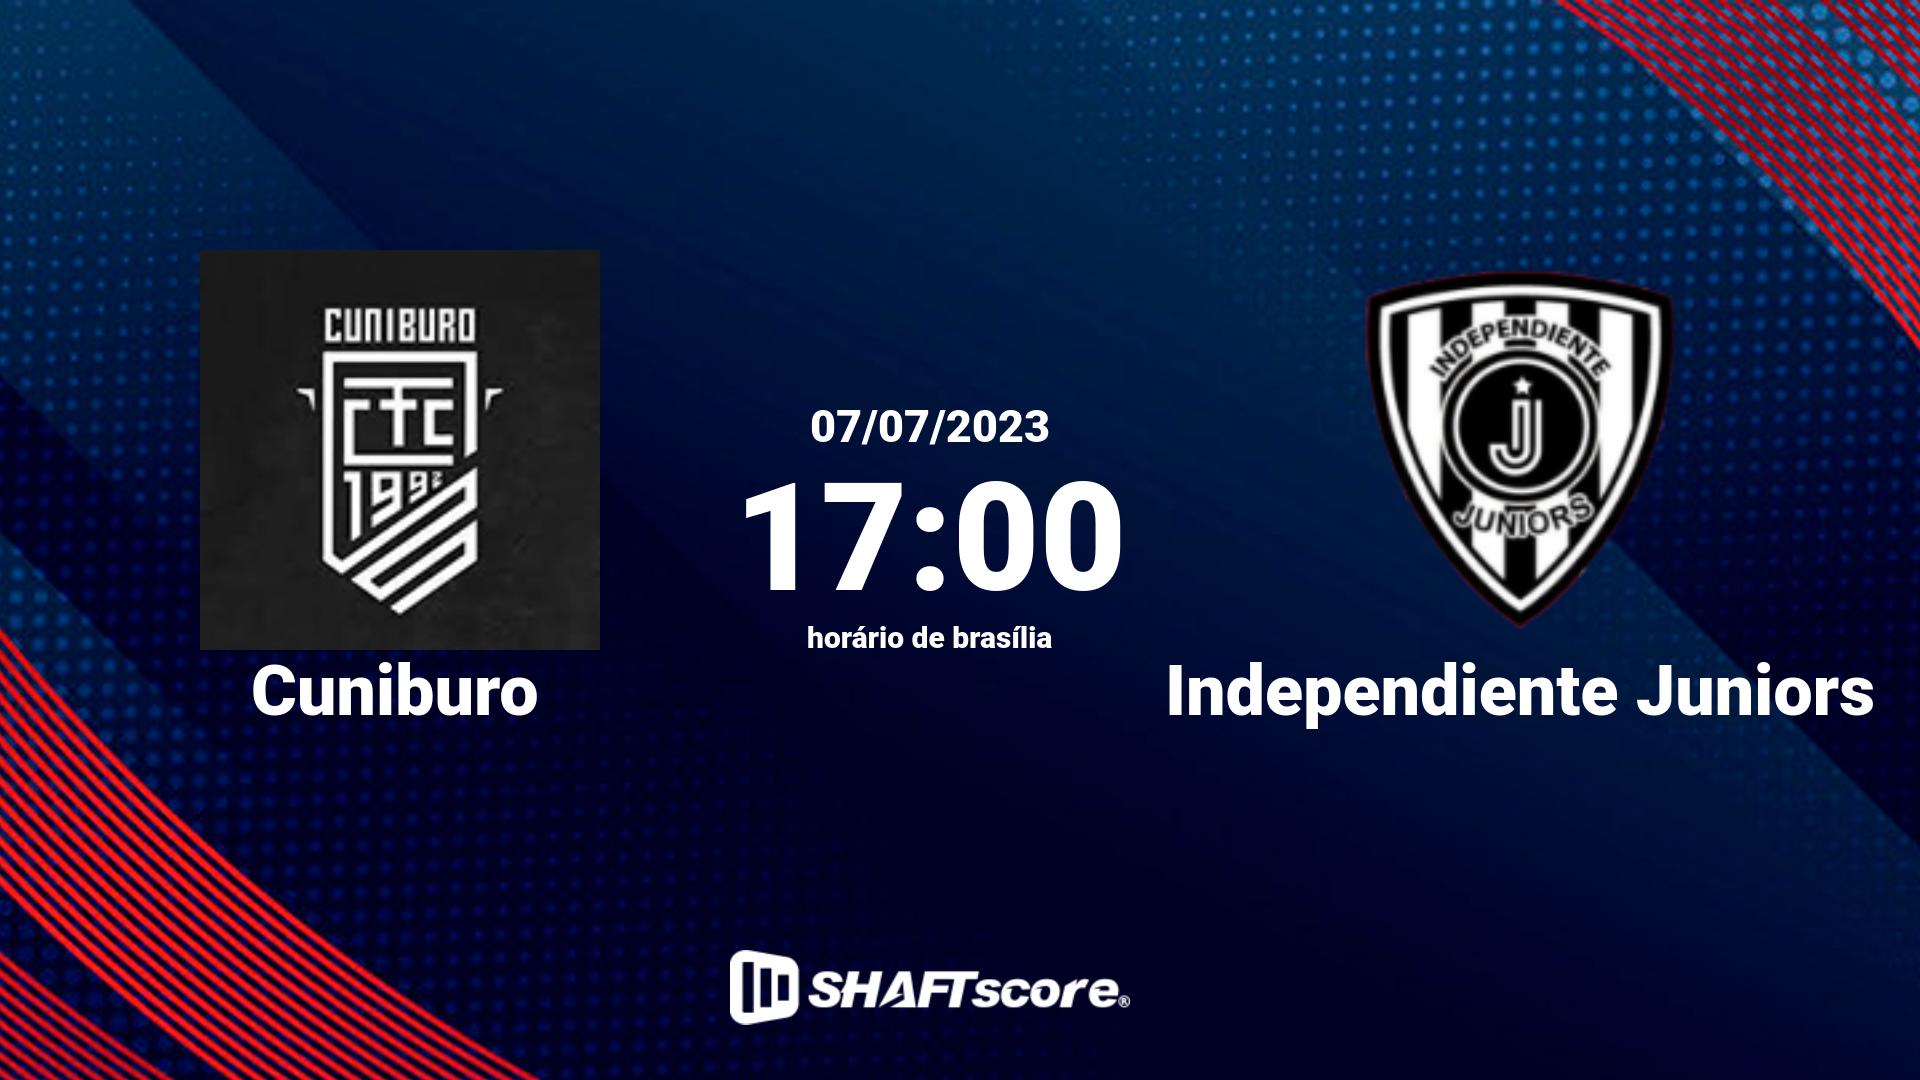 Estatísticas do jogo Cuniburo vs Independiente Juniors 07.07 17:00